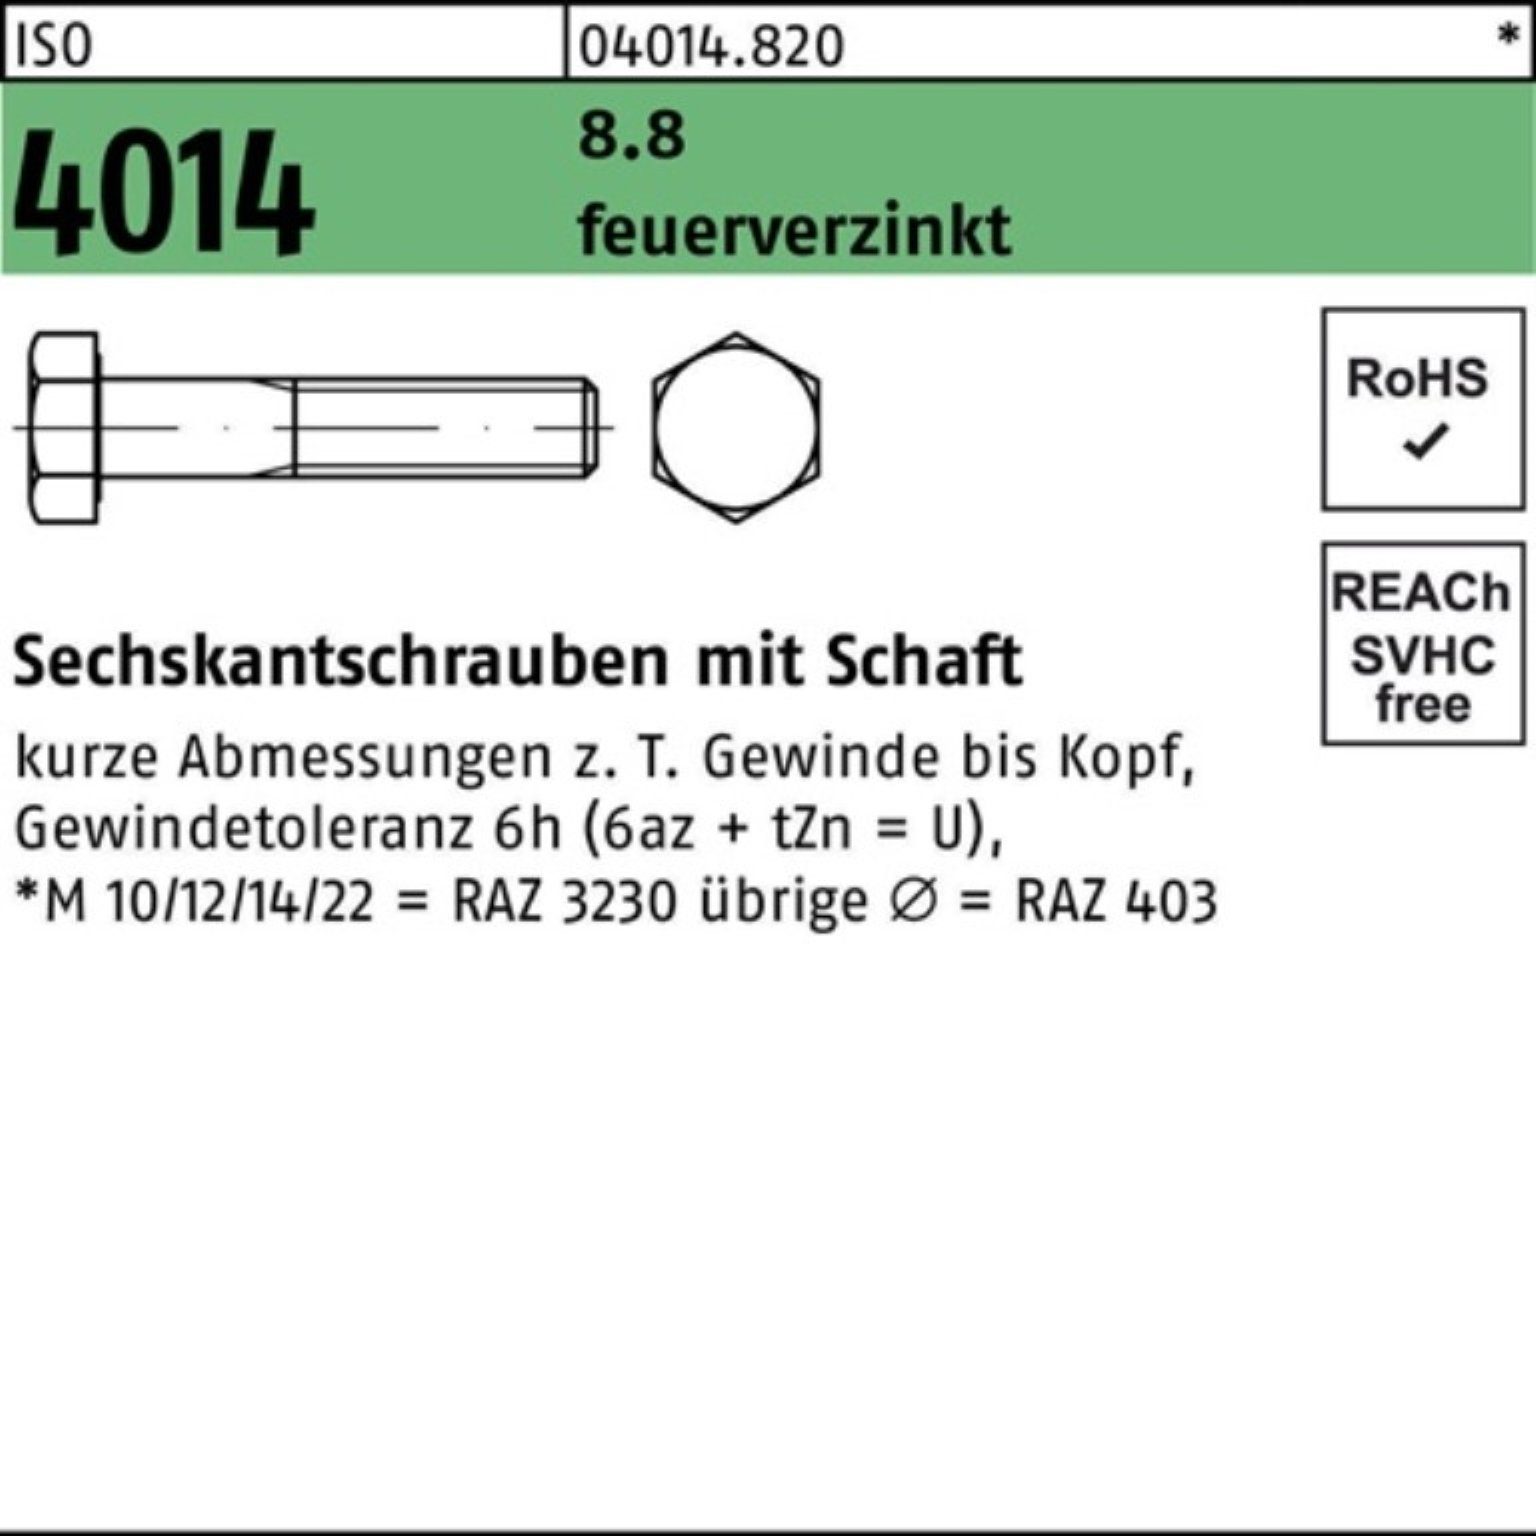 Bufab Sechskantschraube 100er Pack Sechskantschraube ISO 4014 Schaft M30x 90 8.8 feuerverz. 1